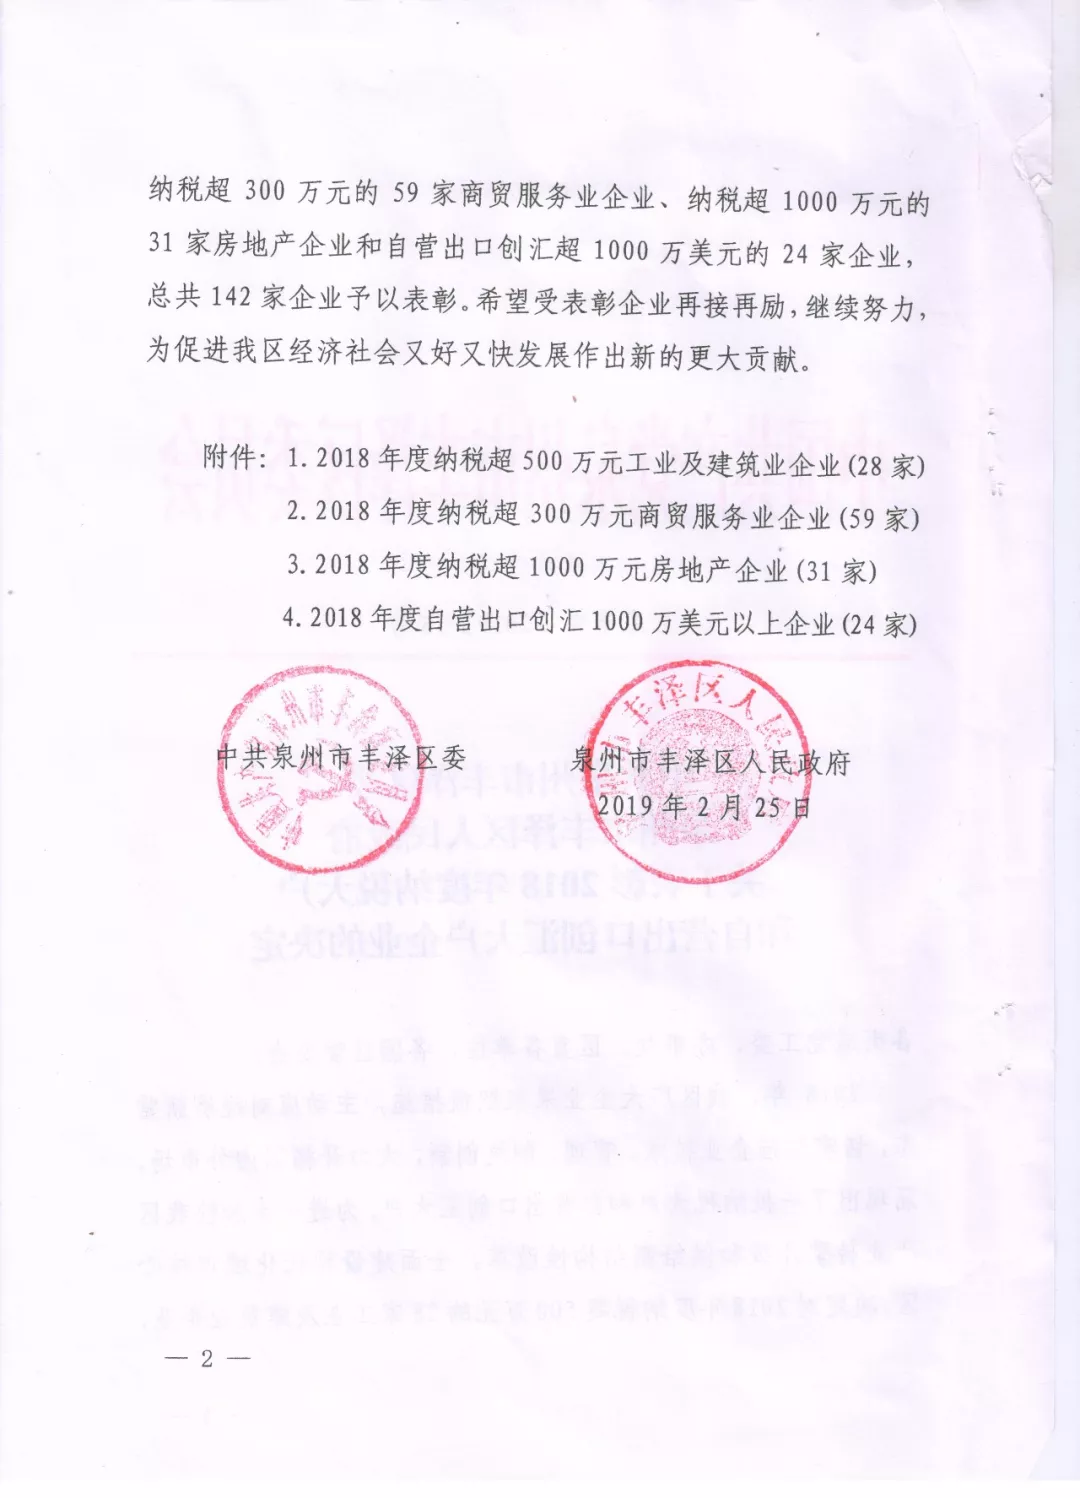 福建新时颖电子商务有限公司荣评为“2019年丰泽区重点企业”(图2)